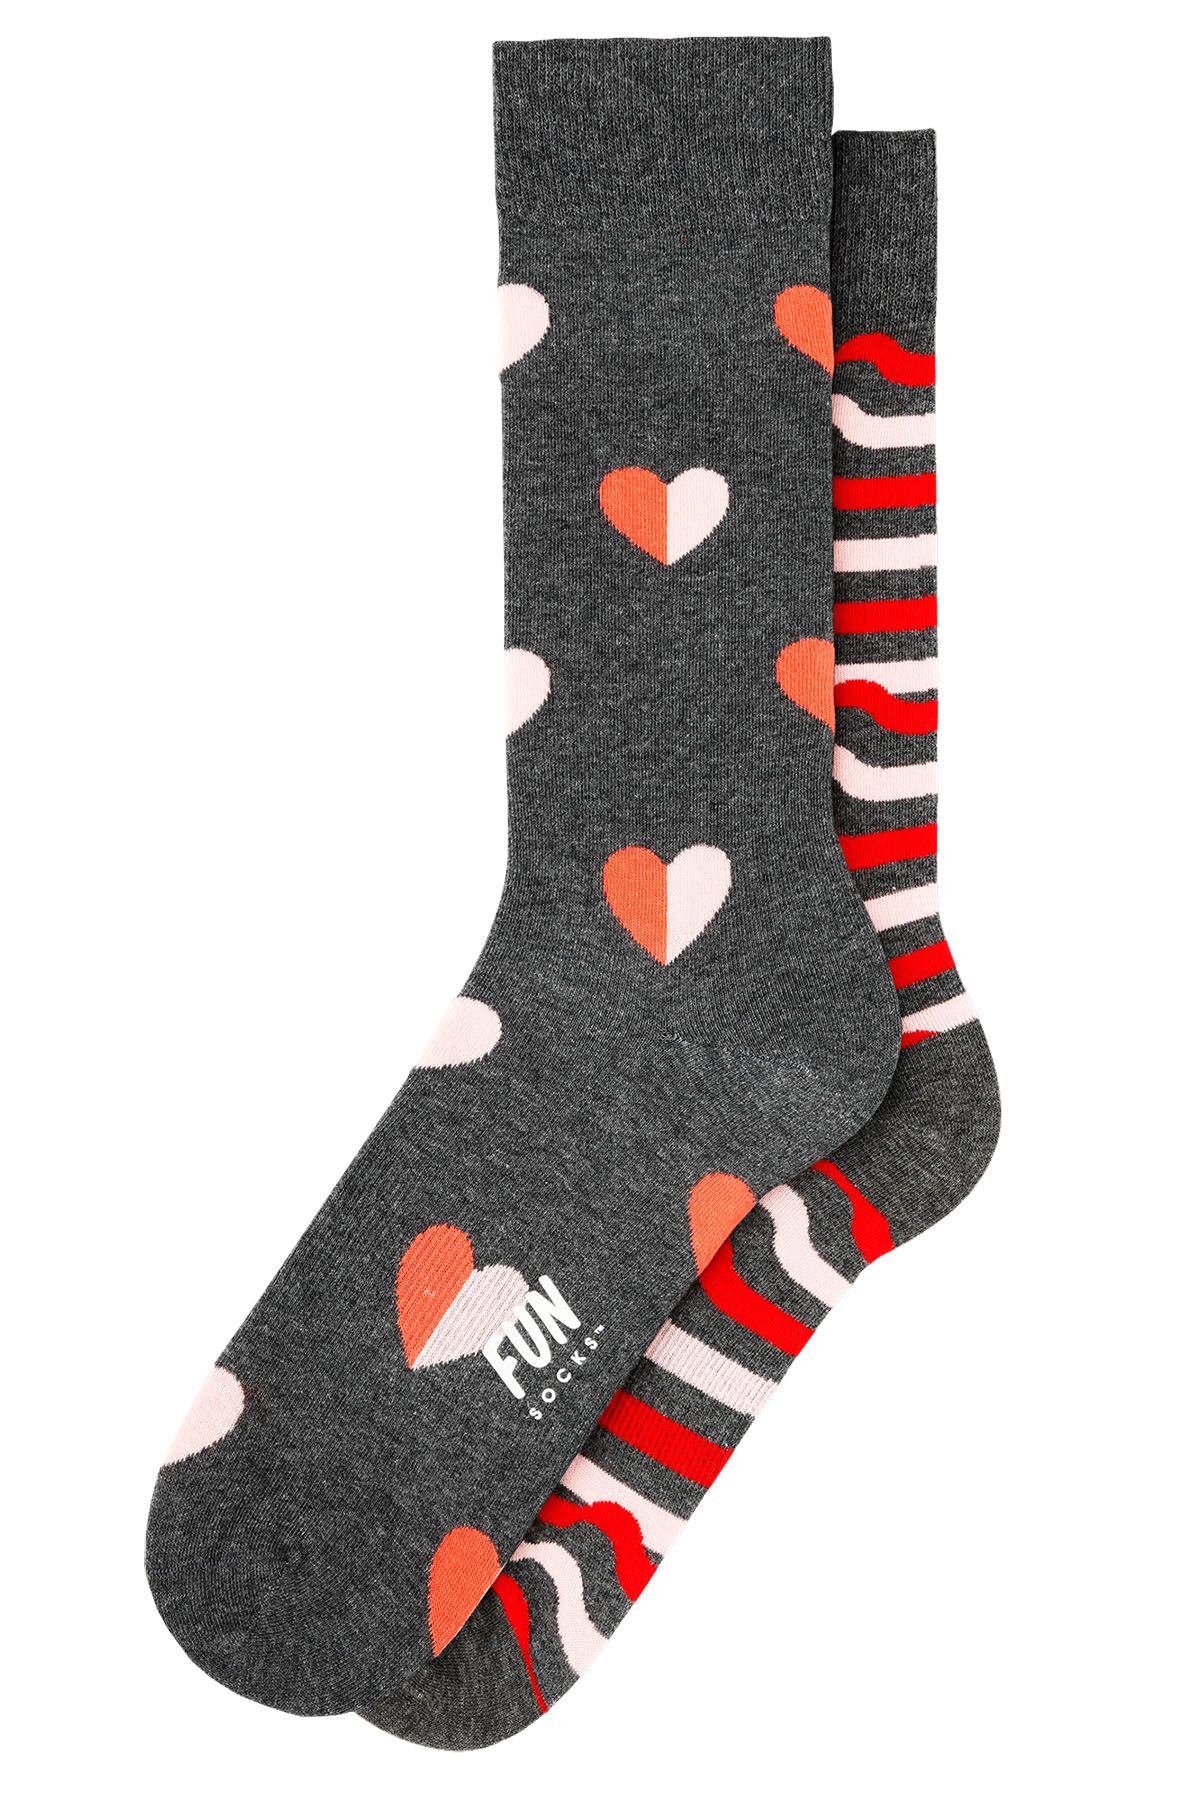 Fun Socks Pink/Grey Singles Awareness Crew Socks